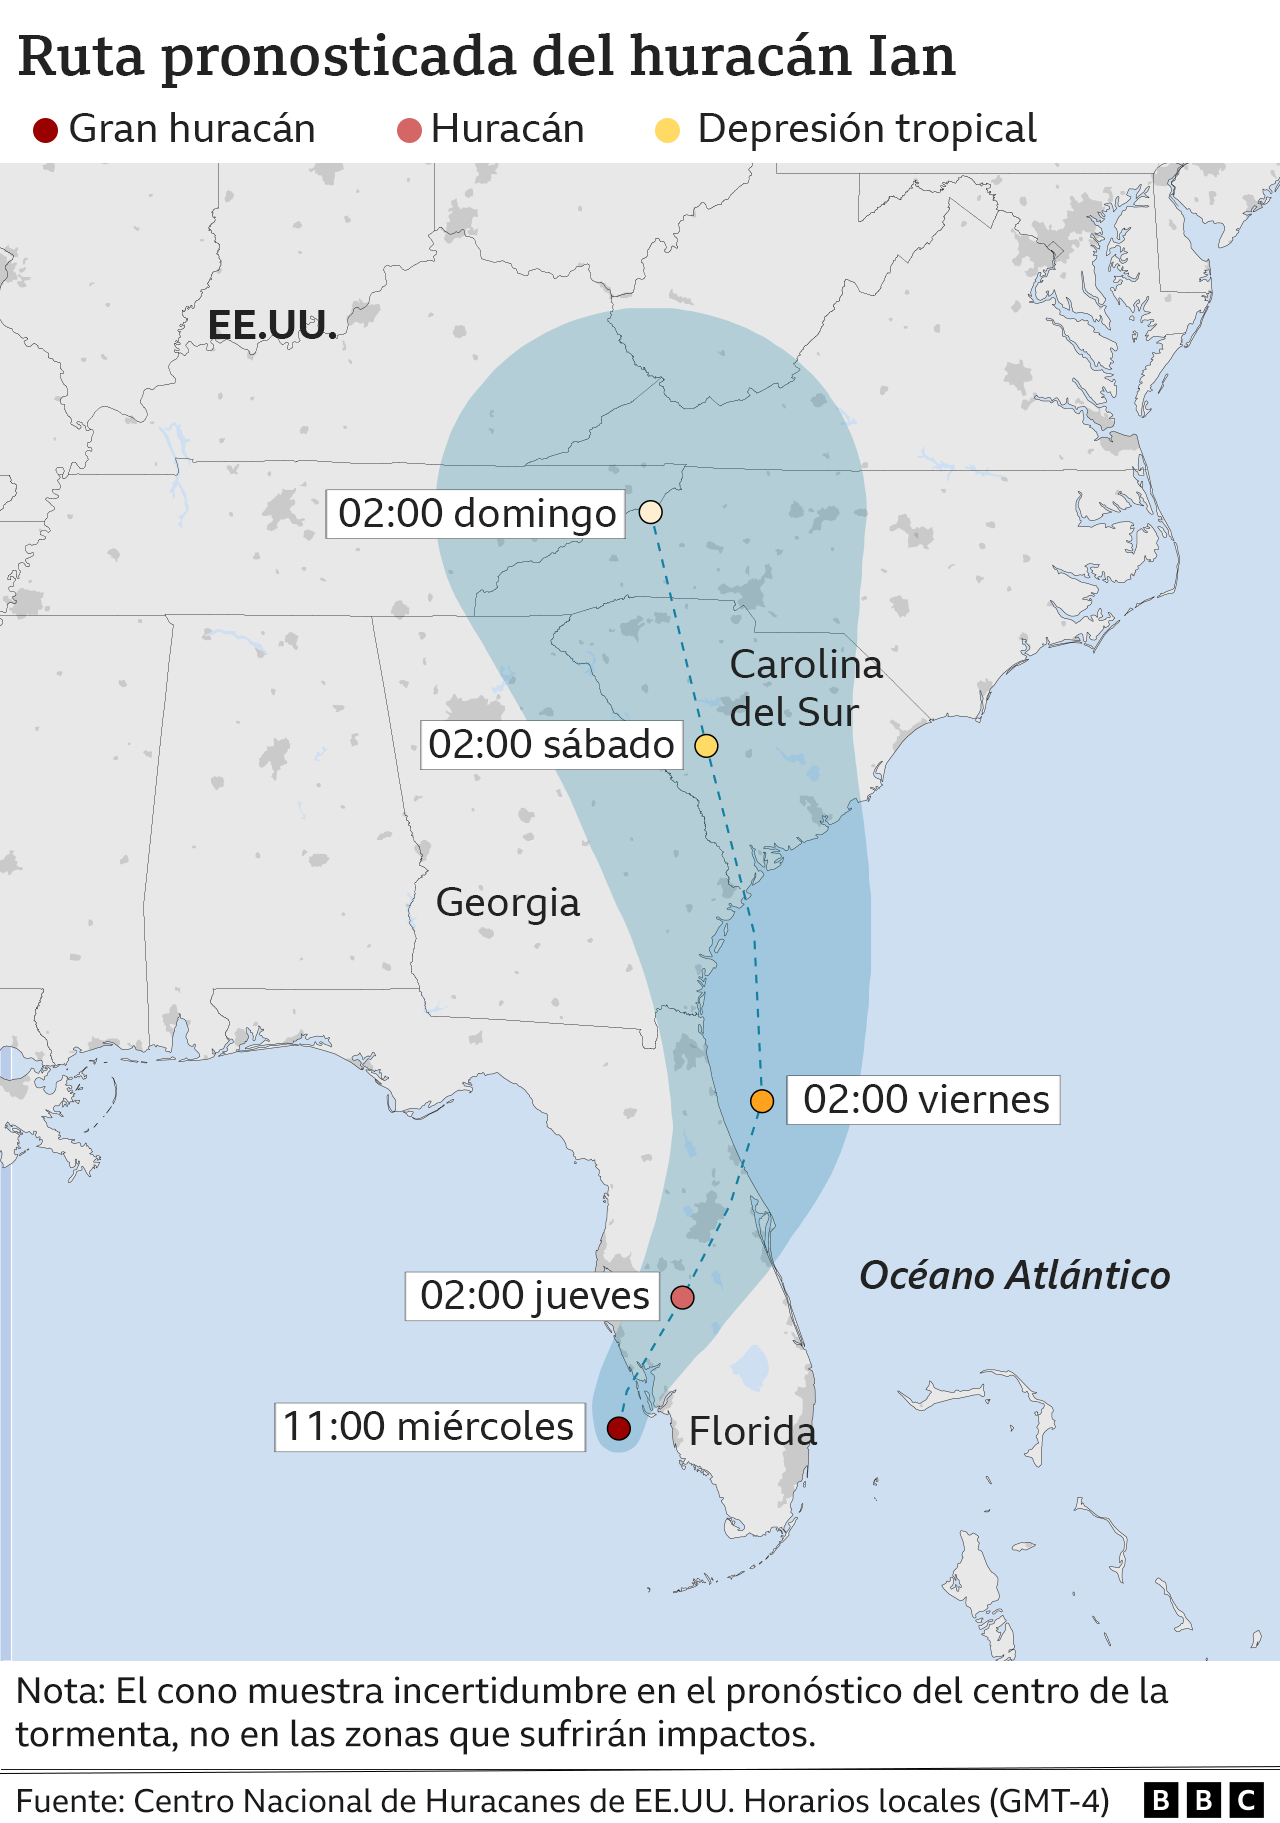 Mapa de la ruta pronosticada para el huracán Ian.